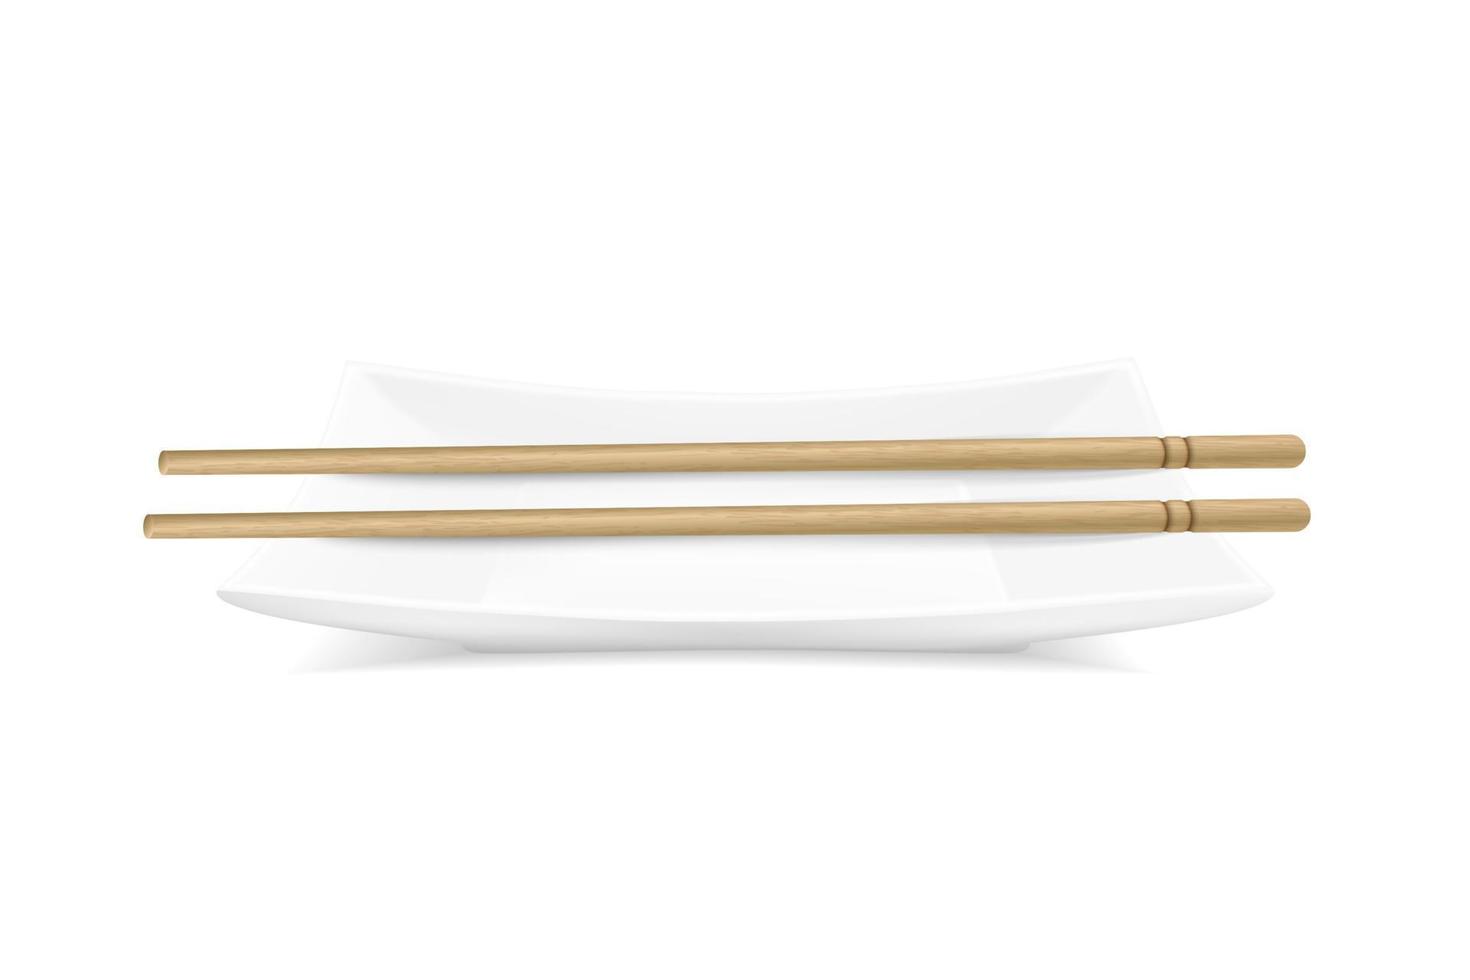 plaque rectangulaire réaliste de vecteur avec des bâtons de bambou. illustration du service de table de sushi. vue depuis le sommet